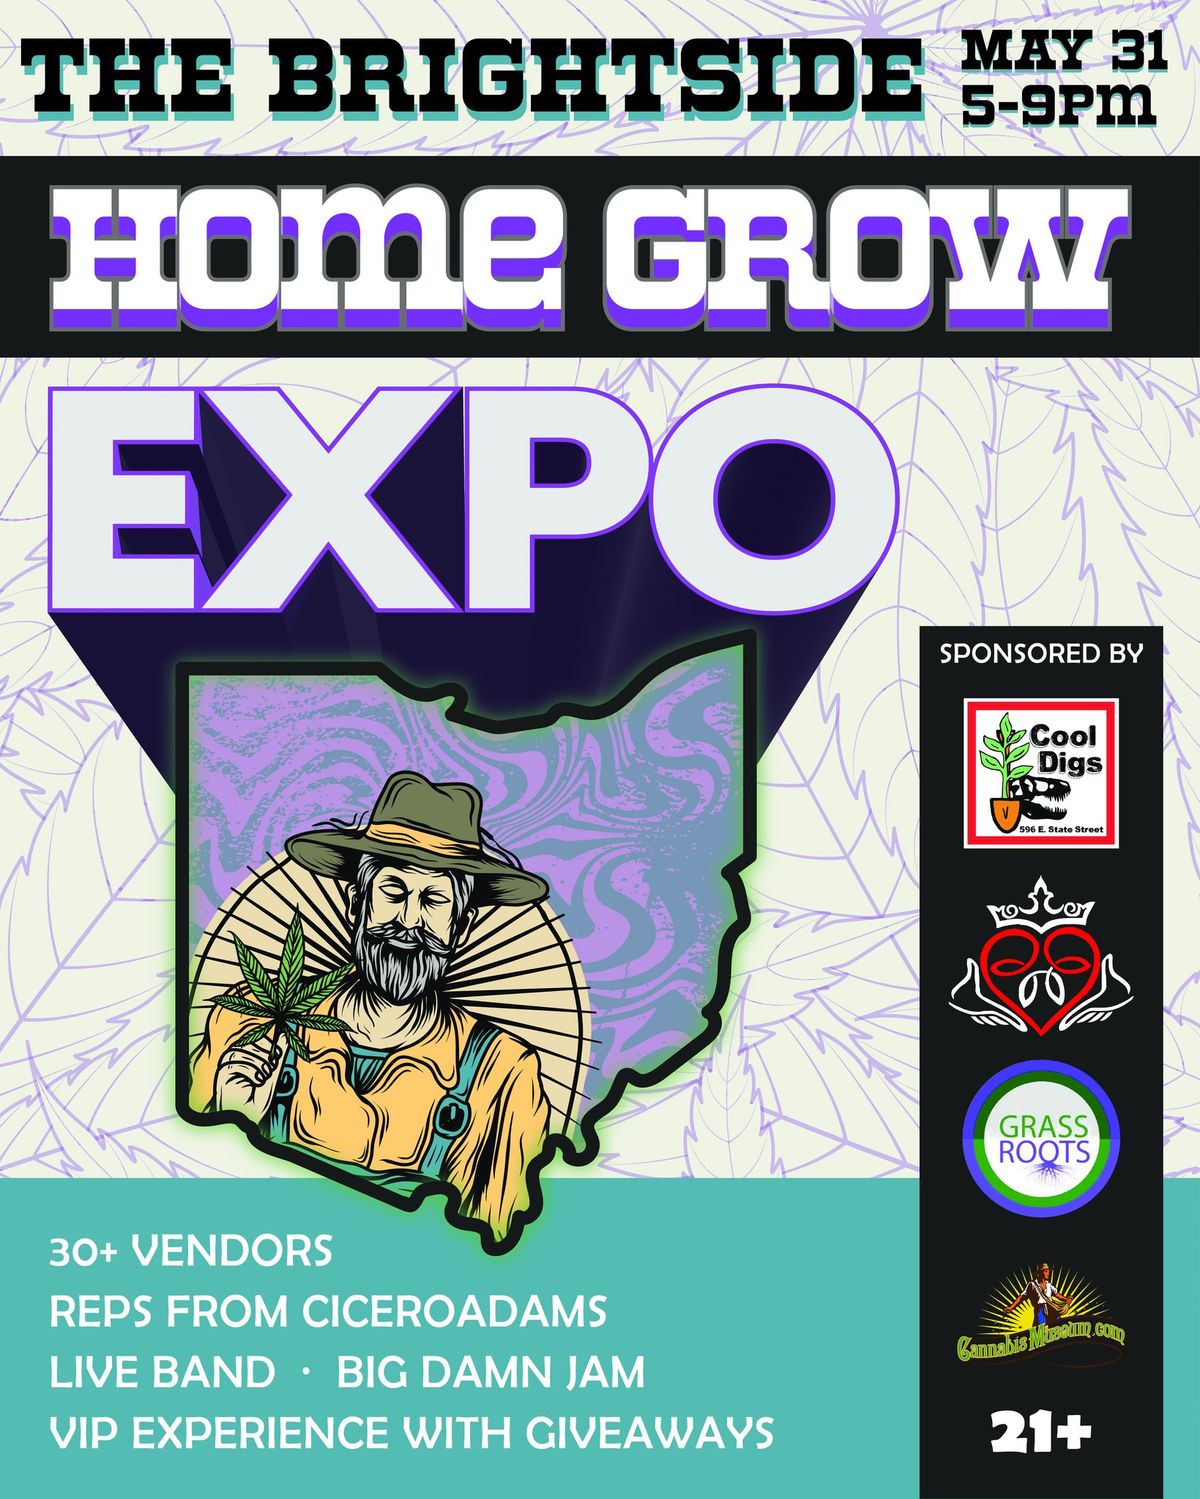 SW Ohio Home Grow Expo